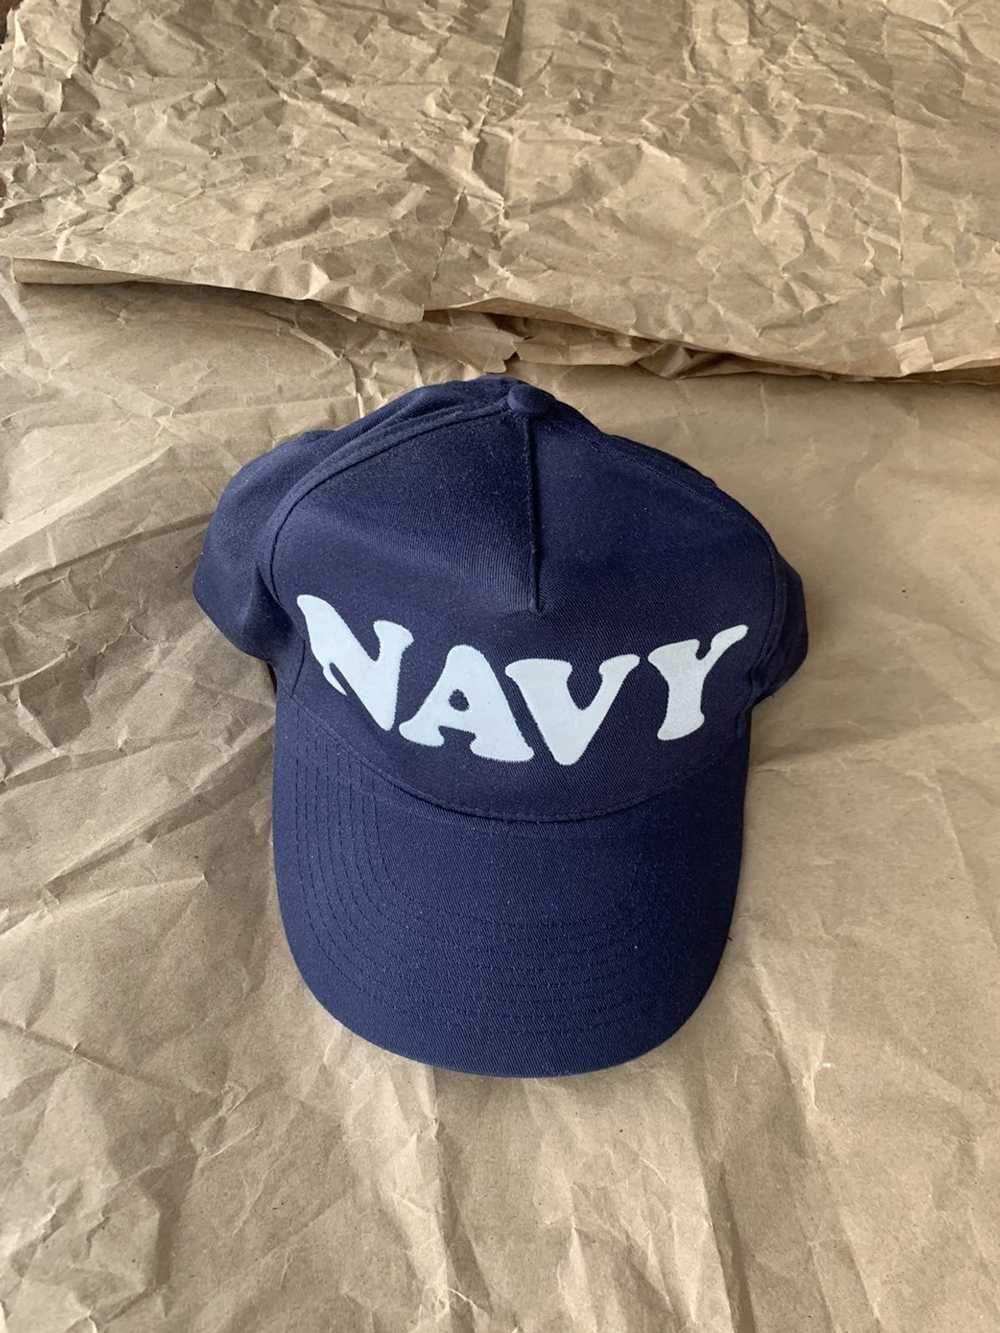 Vintage Vintage SnapBack Navy Bubble Letter Hat - image 1